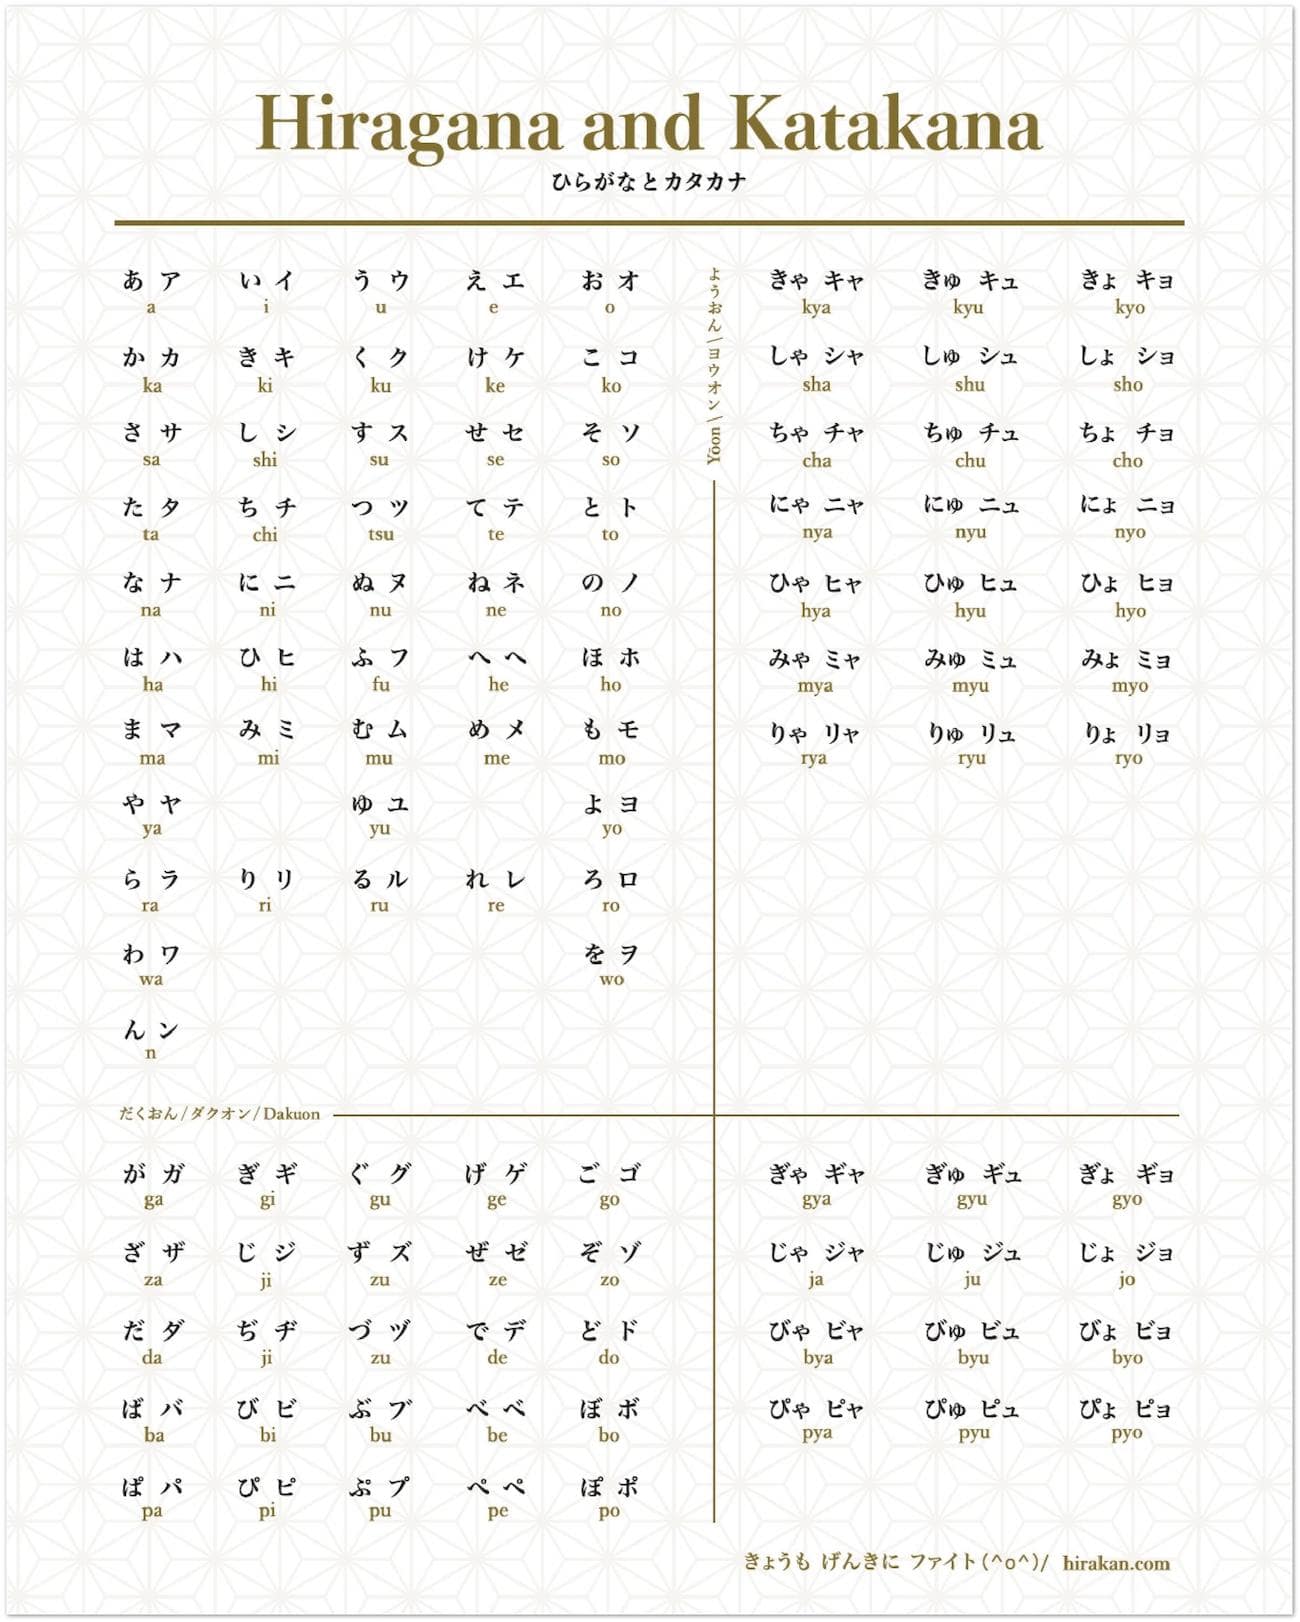 full hiragana chart